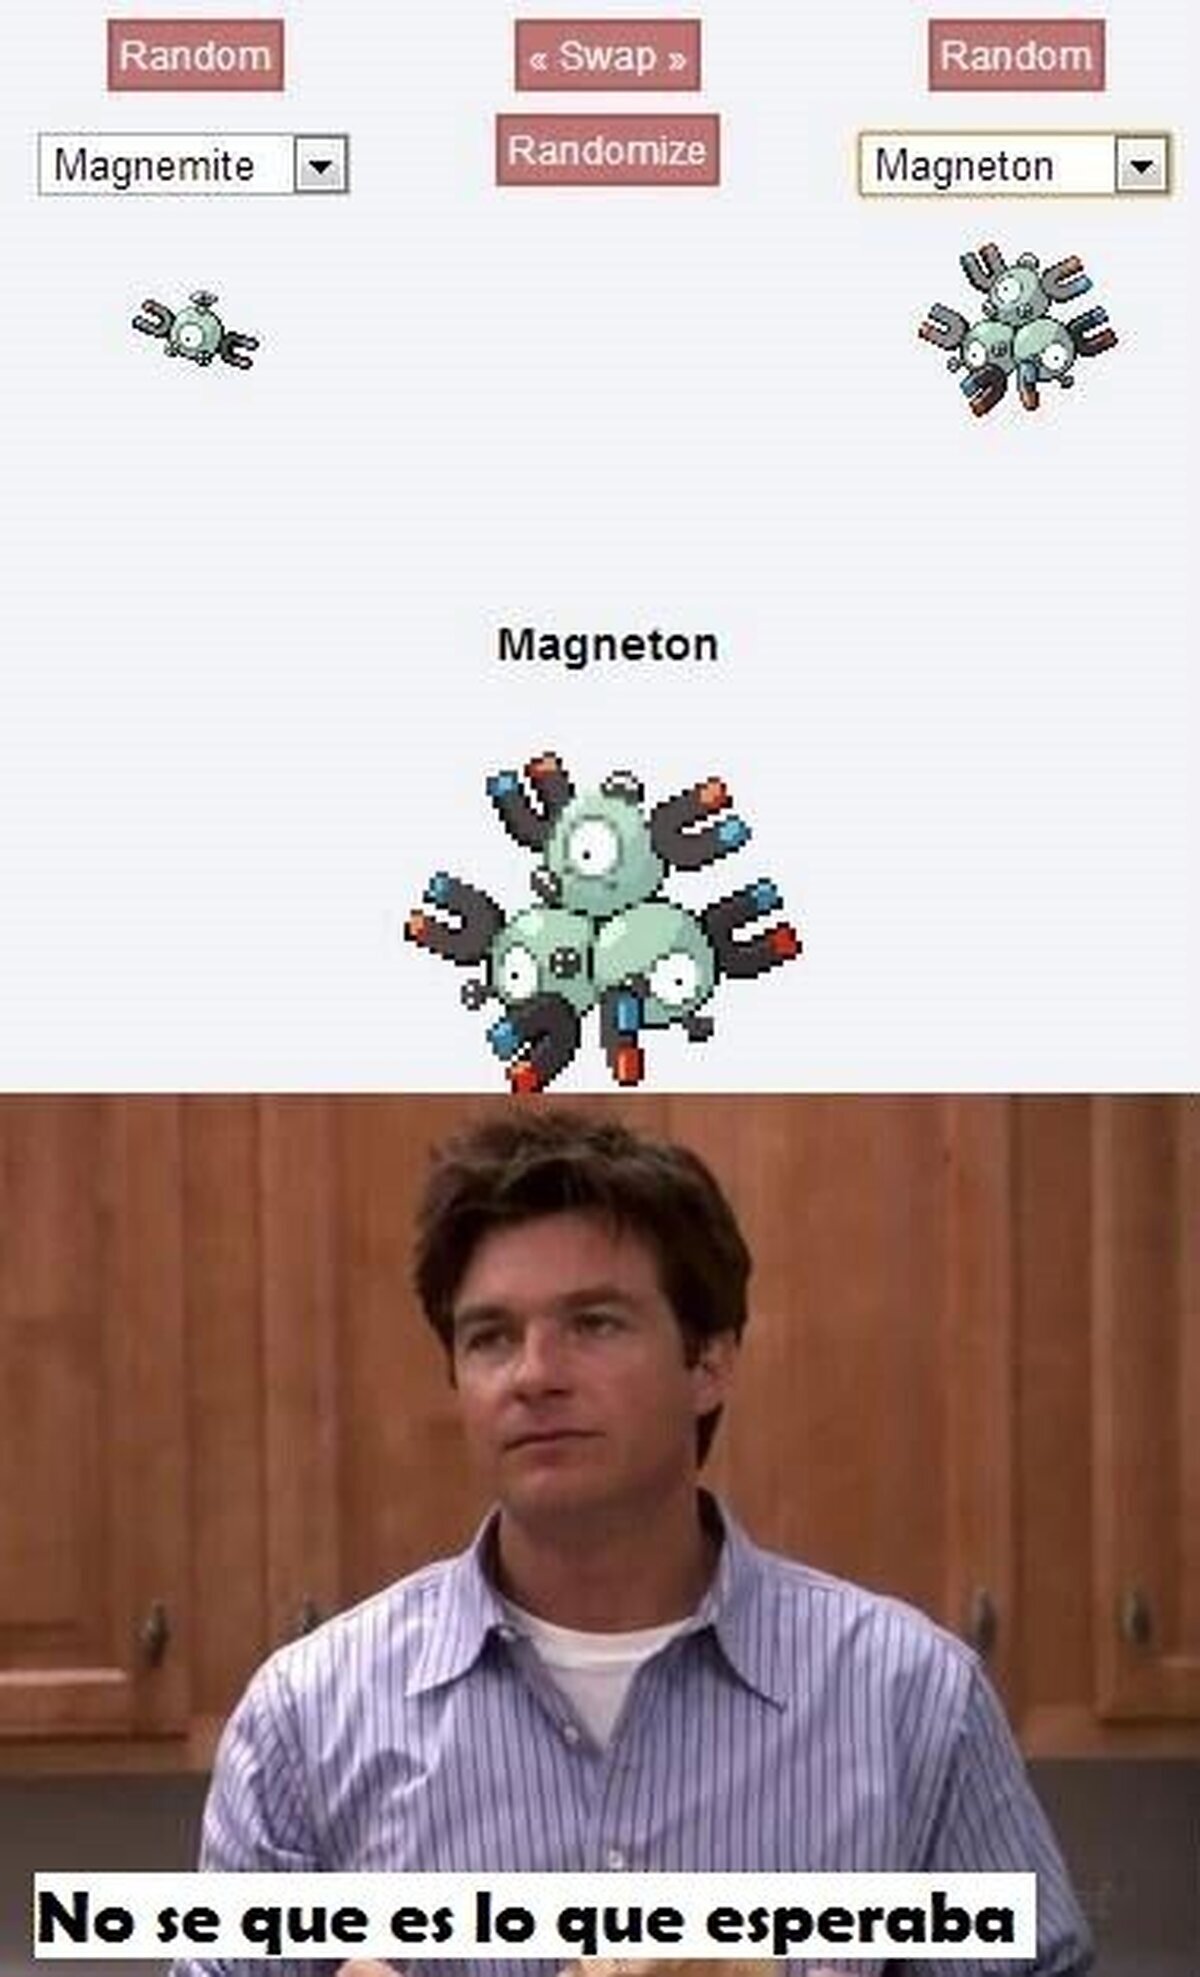 ¿Fusión de Magnemite y Magneton?